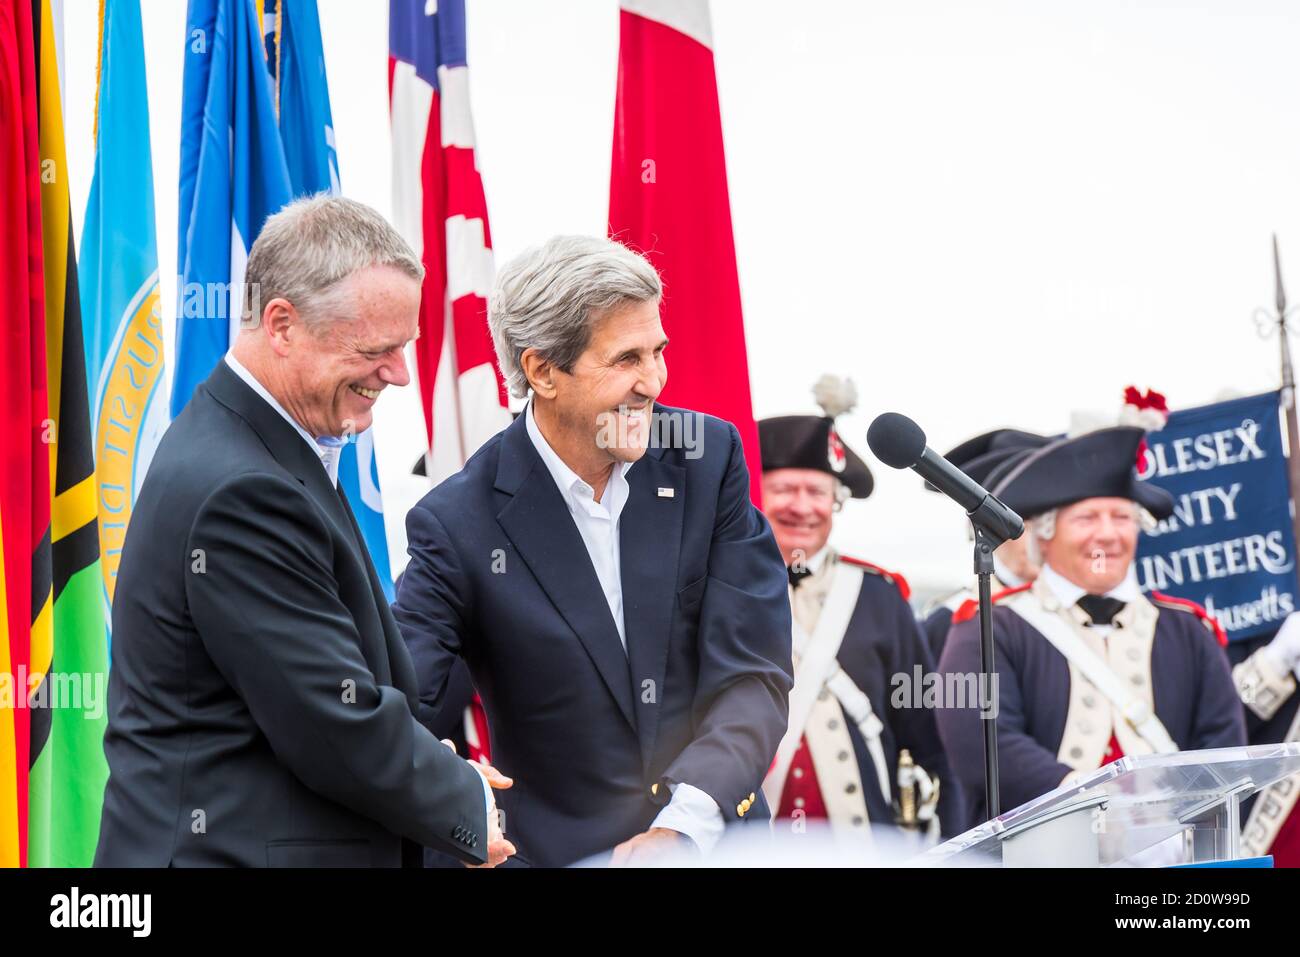 Boston, Massachusetts. Juni 2017. Der ehemalige US-Außenminister John Kerry schüttelte sich bei den Feierlichkeiten in Sail Boston die Hände von Gouverneur Charlie Baker. Stockfoto